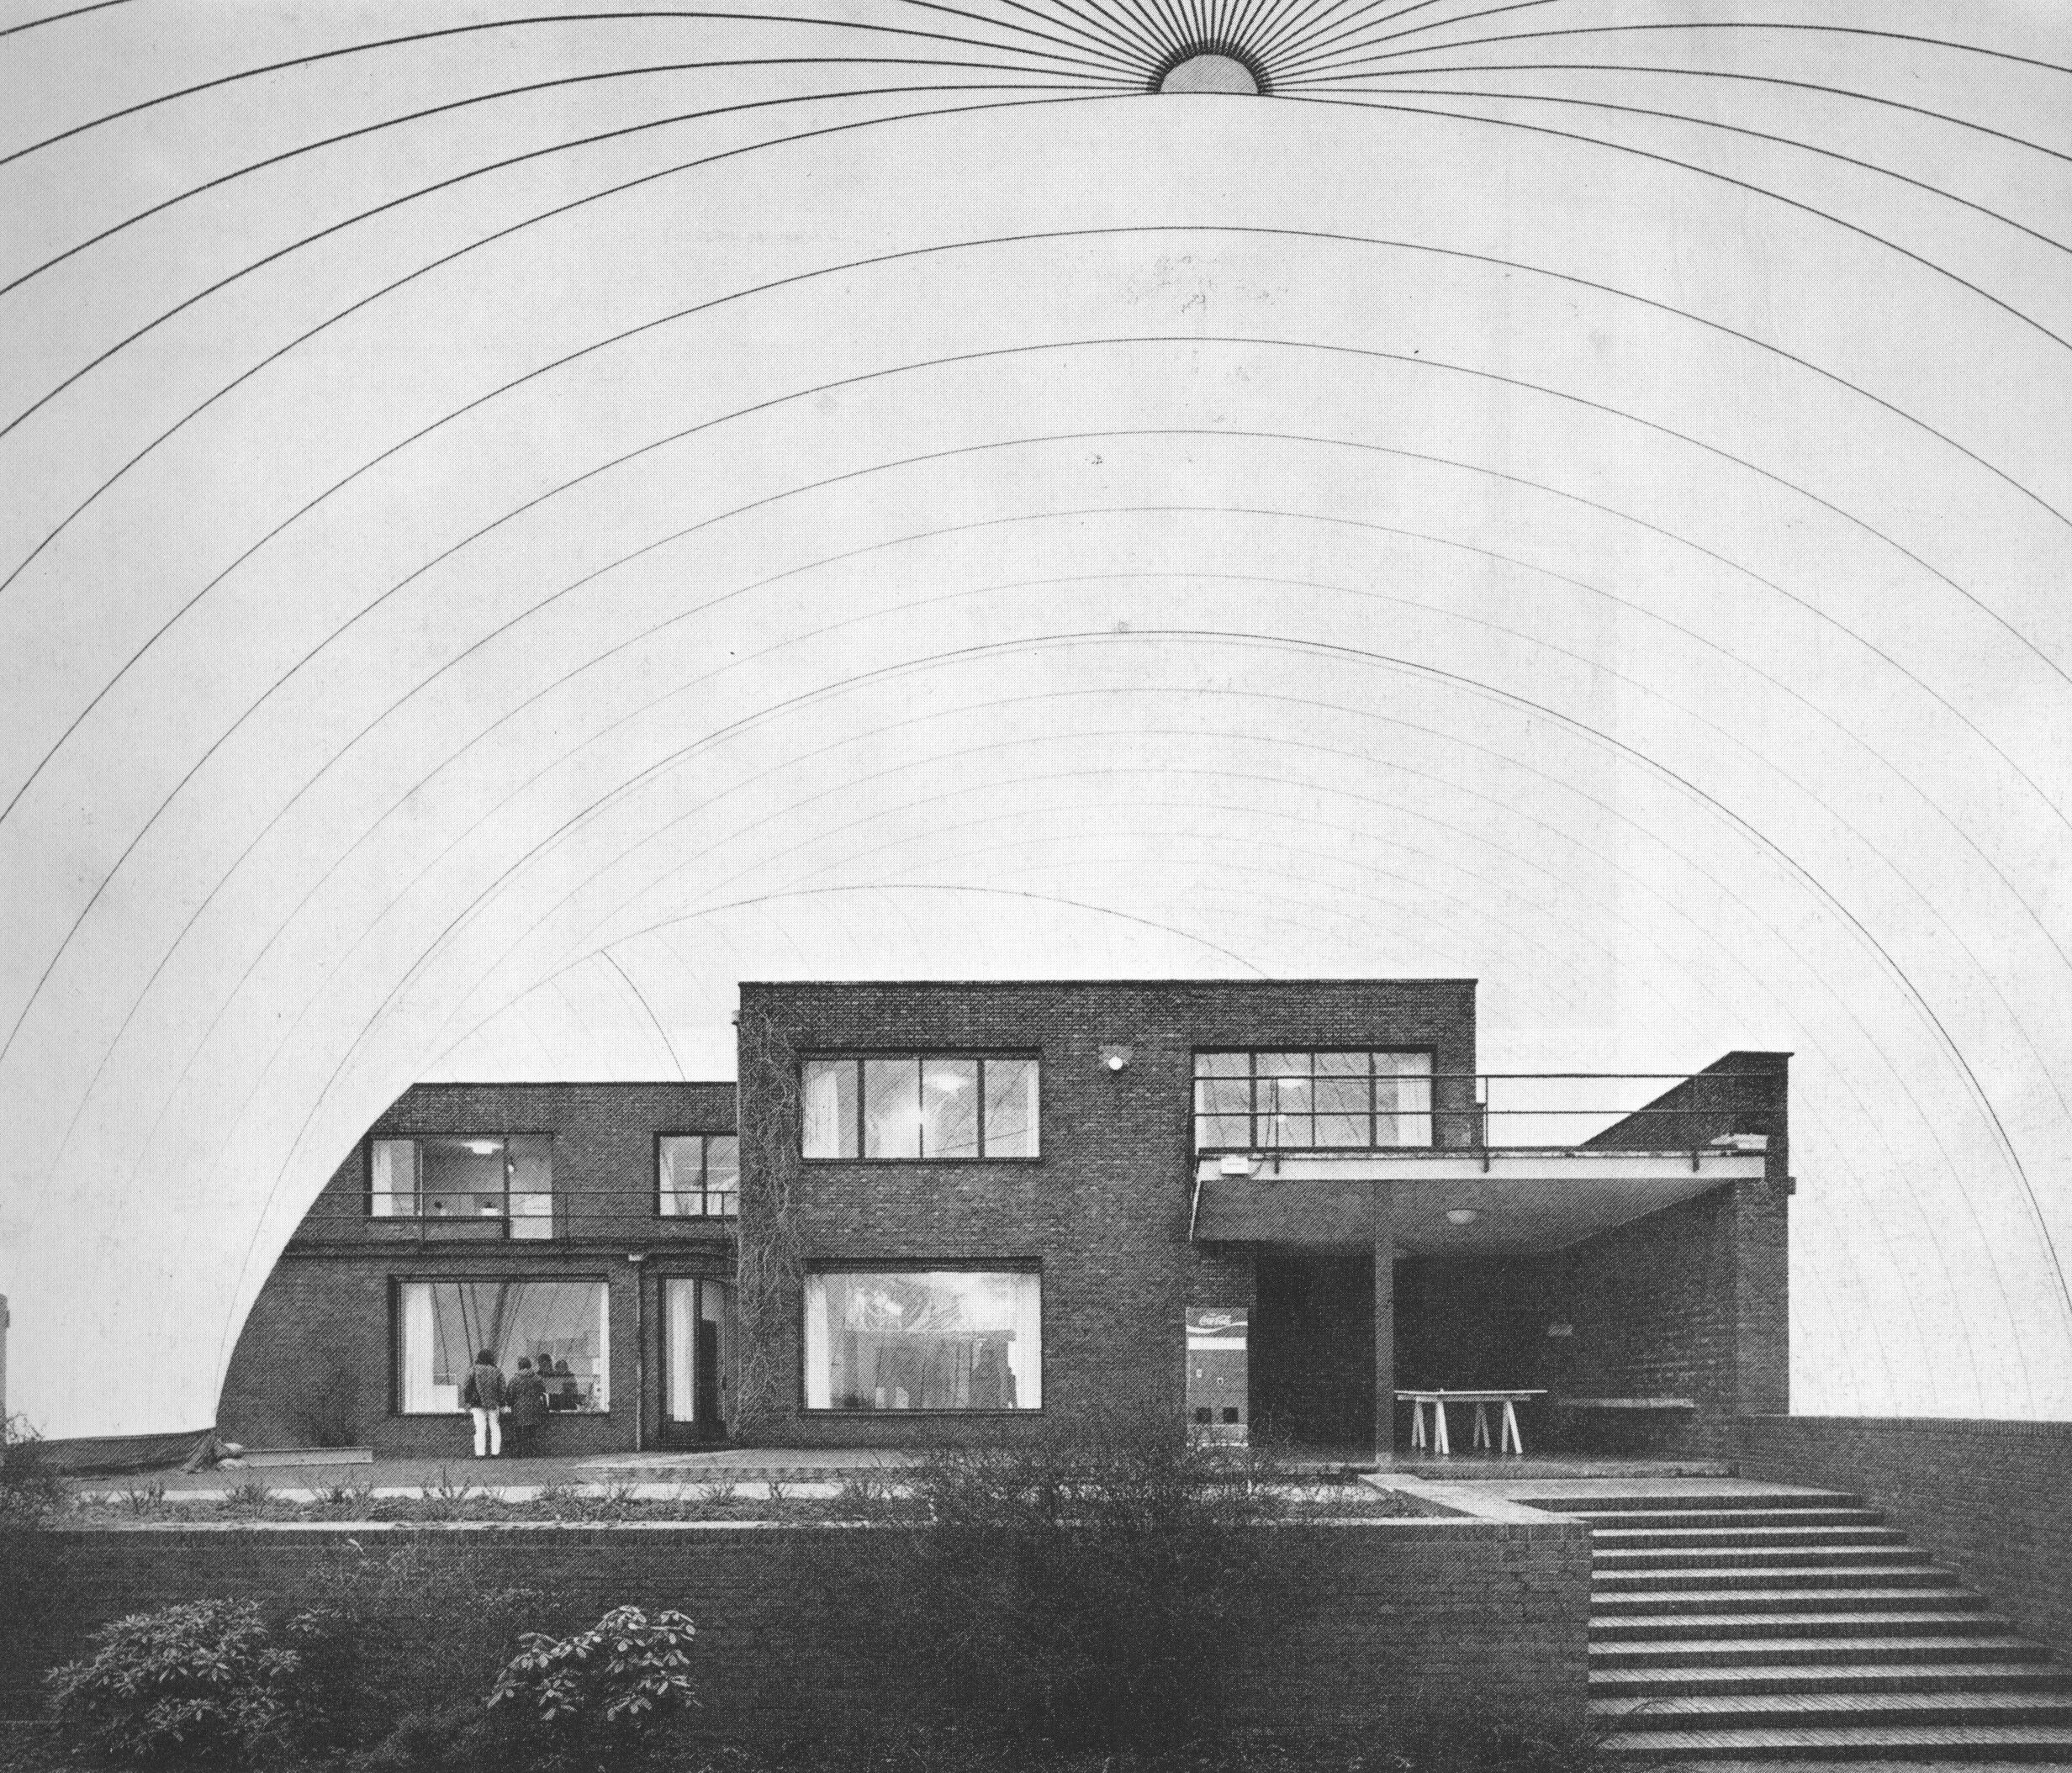 1960s architecture schools